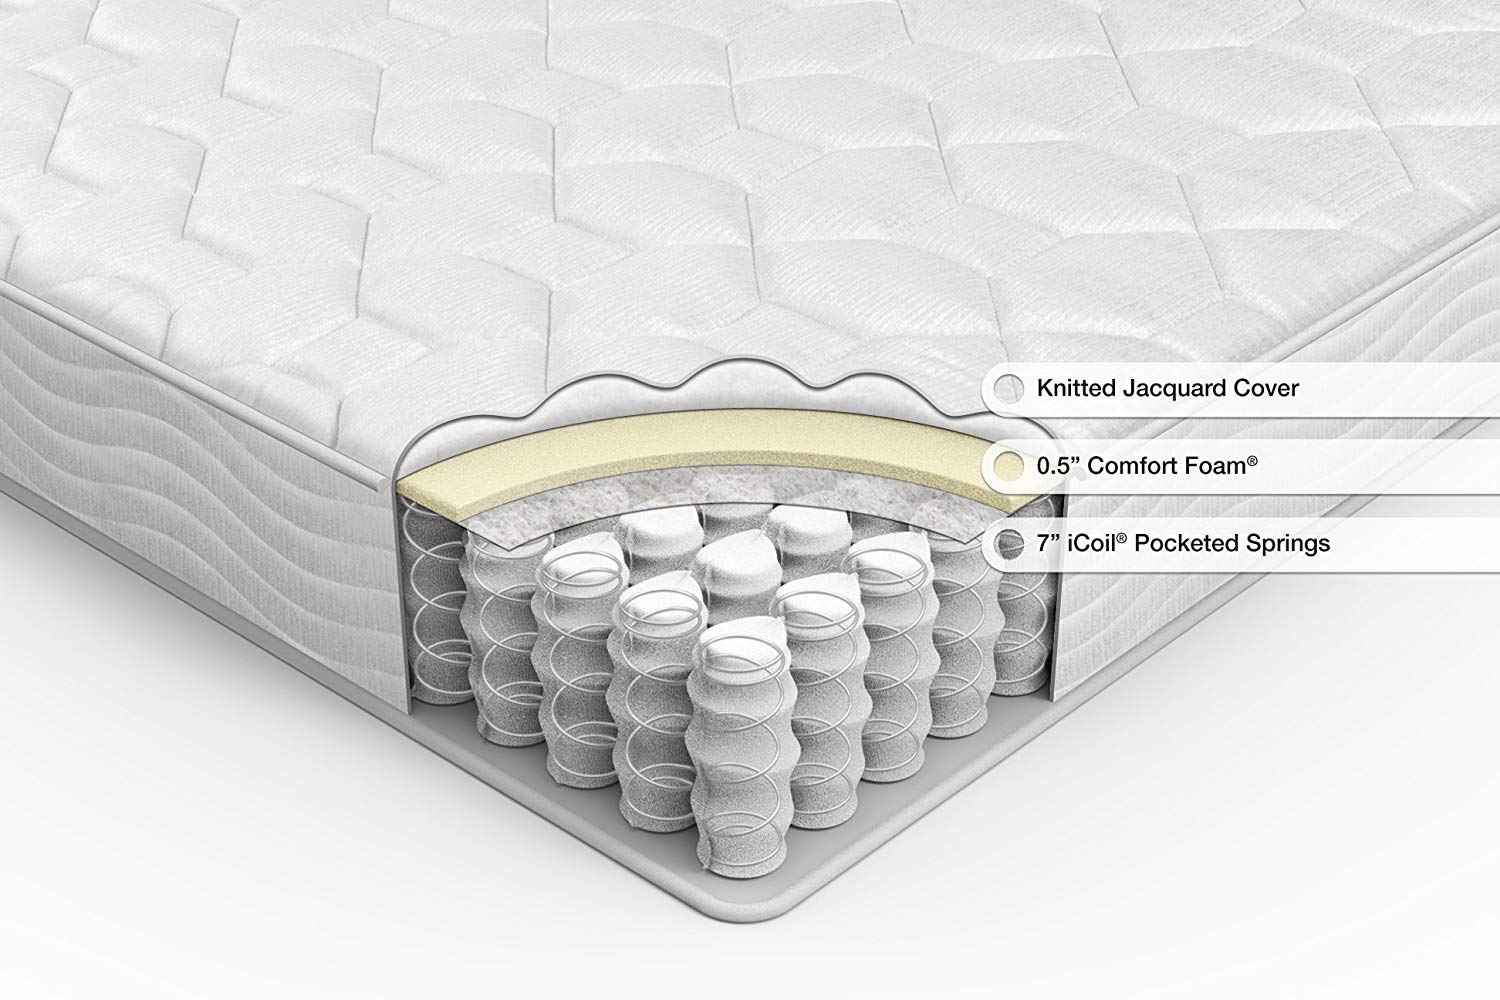 Pocket spring mattresses